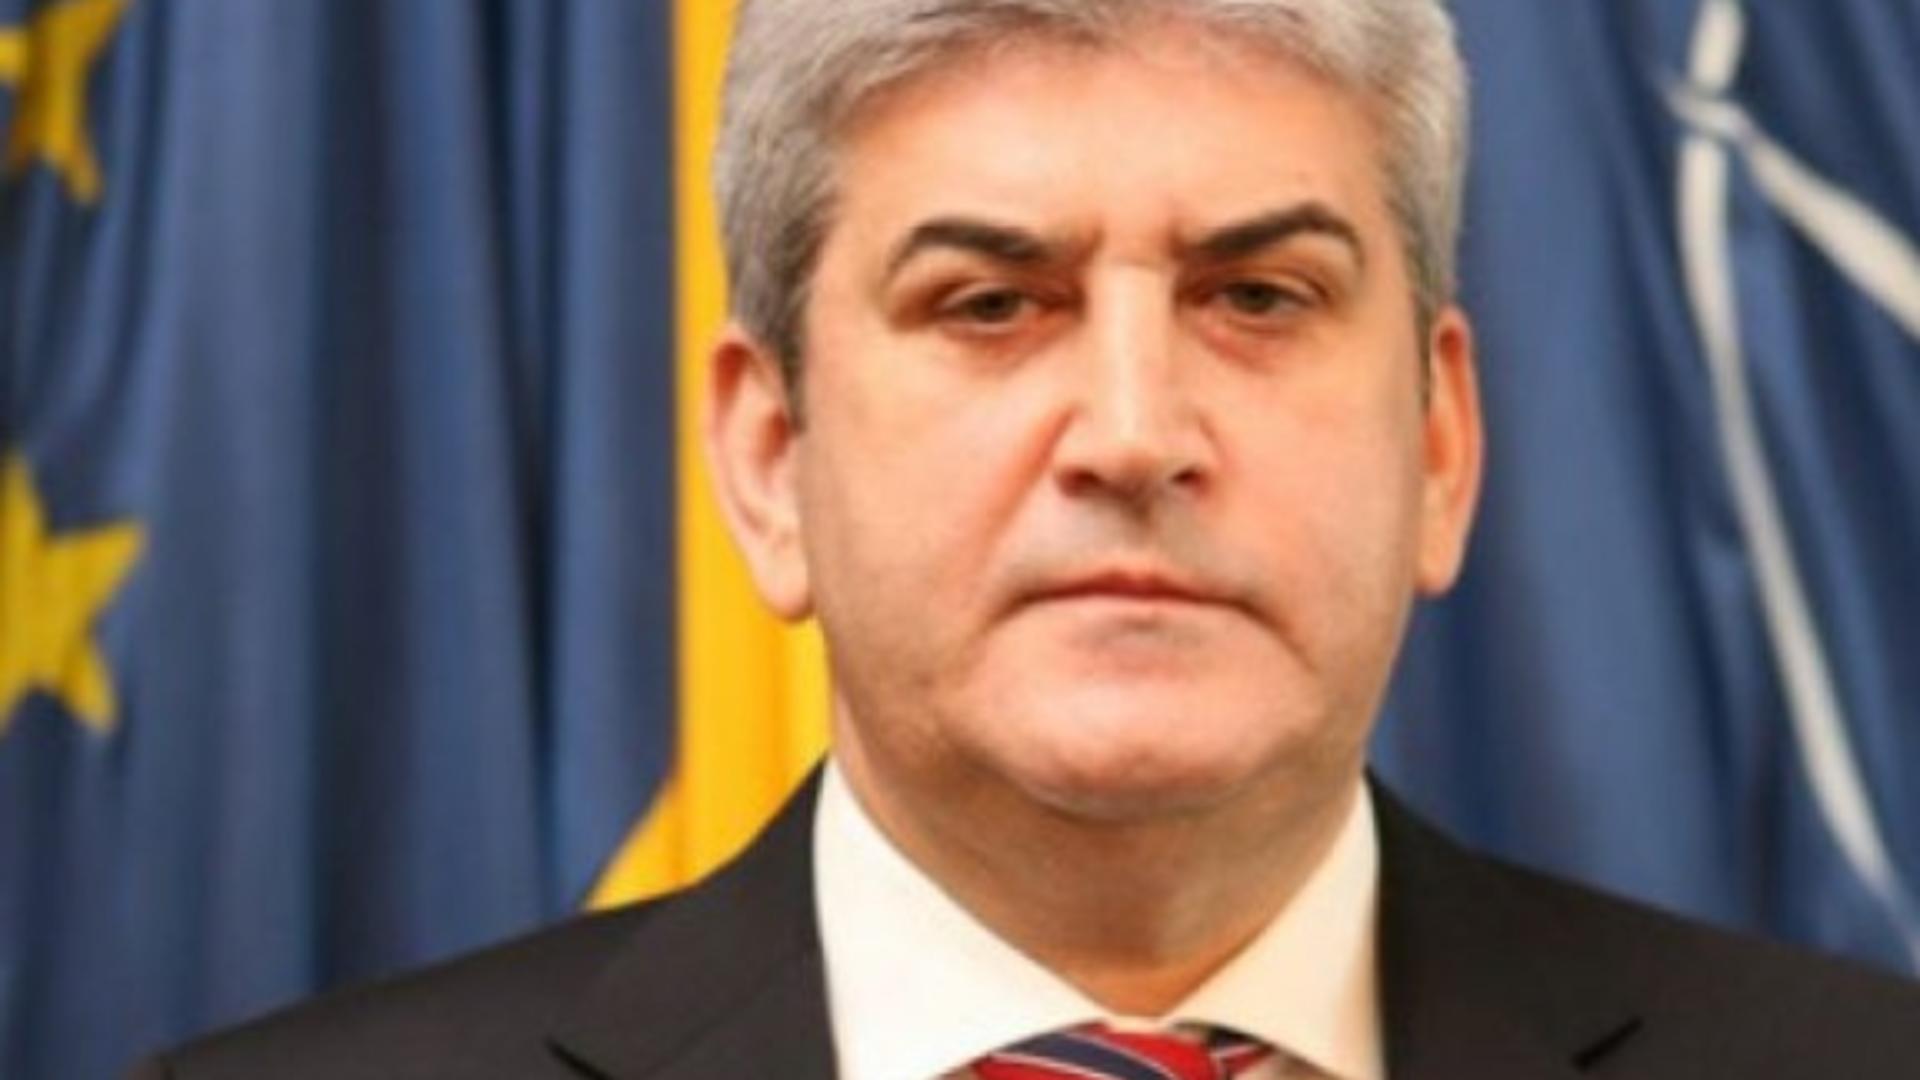 MOTIVELE pentru care Curtea de Apel București a stabilit achitarea definitiva a lui Gabriel Oprea: "Justiția a făcut dreptate"